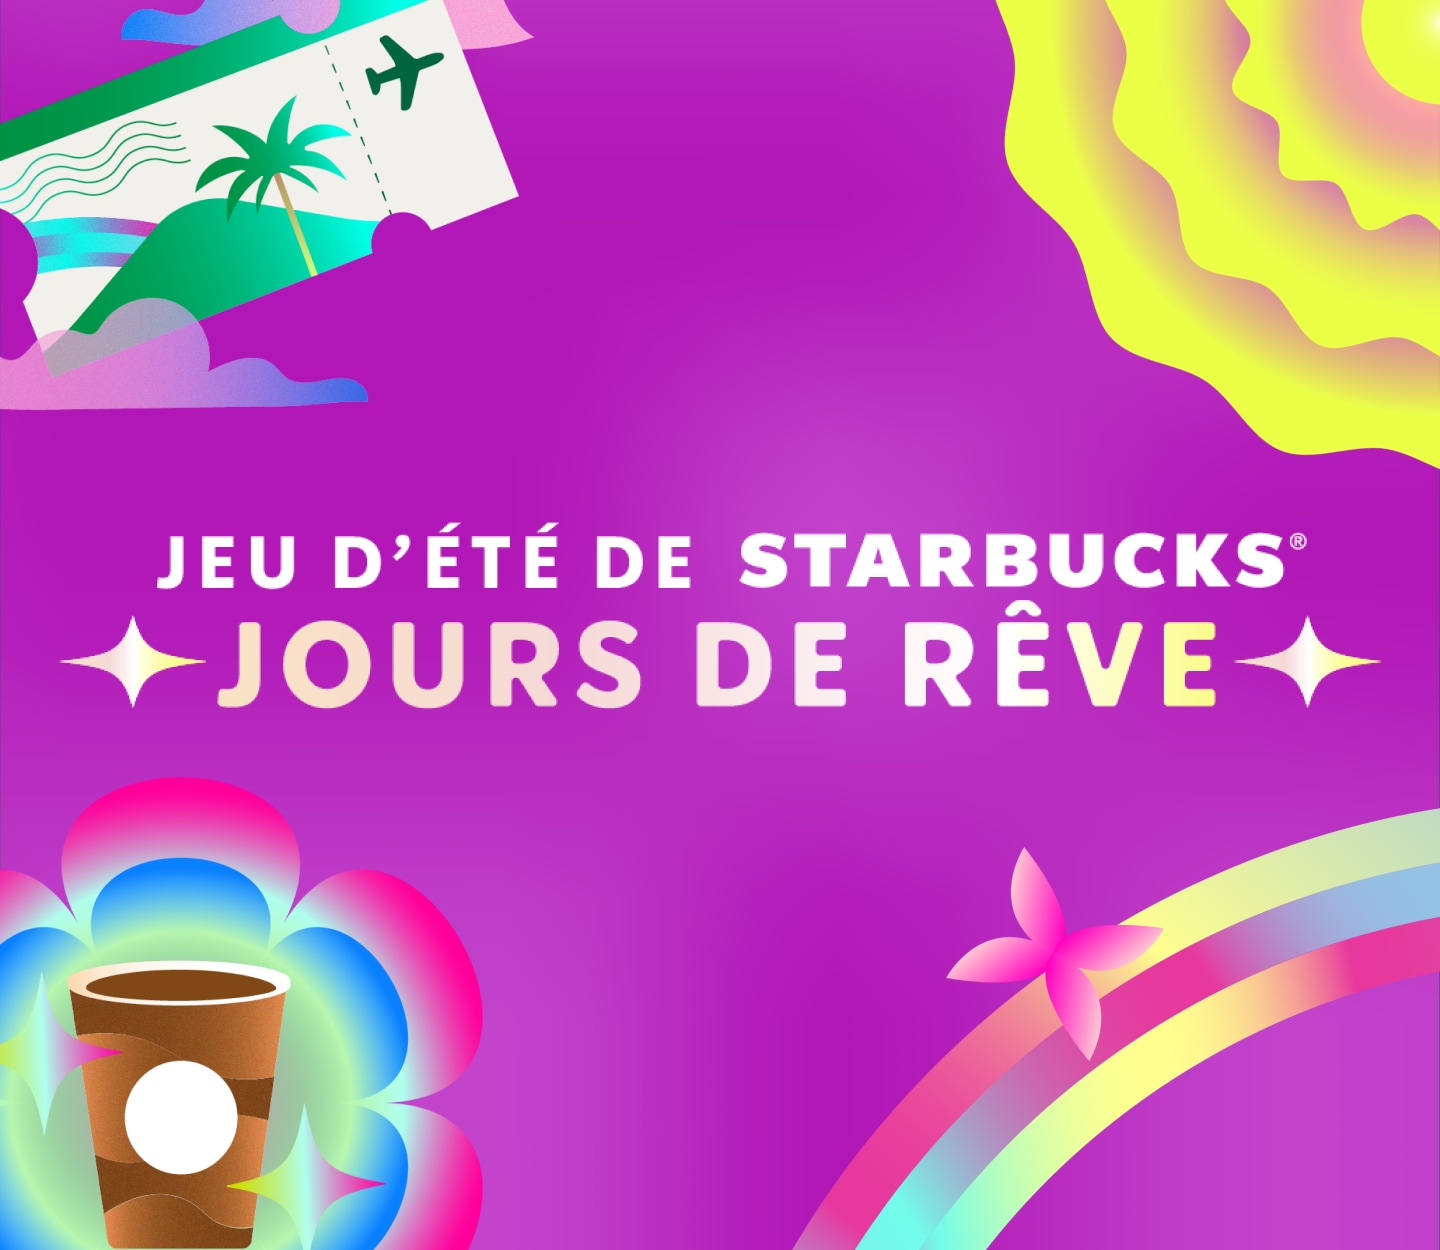 Le texte « Jeu d’été Starbucks® : Jours de rêve » figure sur un arrière-plan magenta, entouré d’icônes de prix.